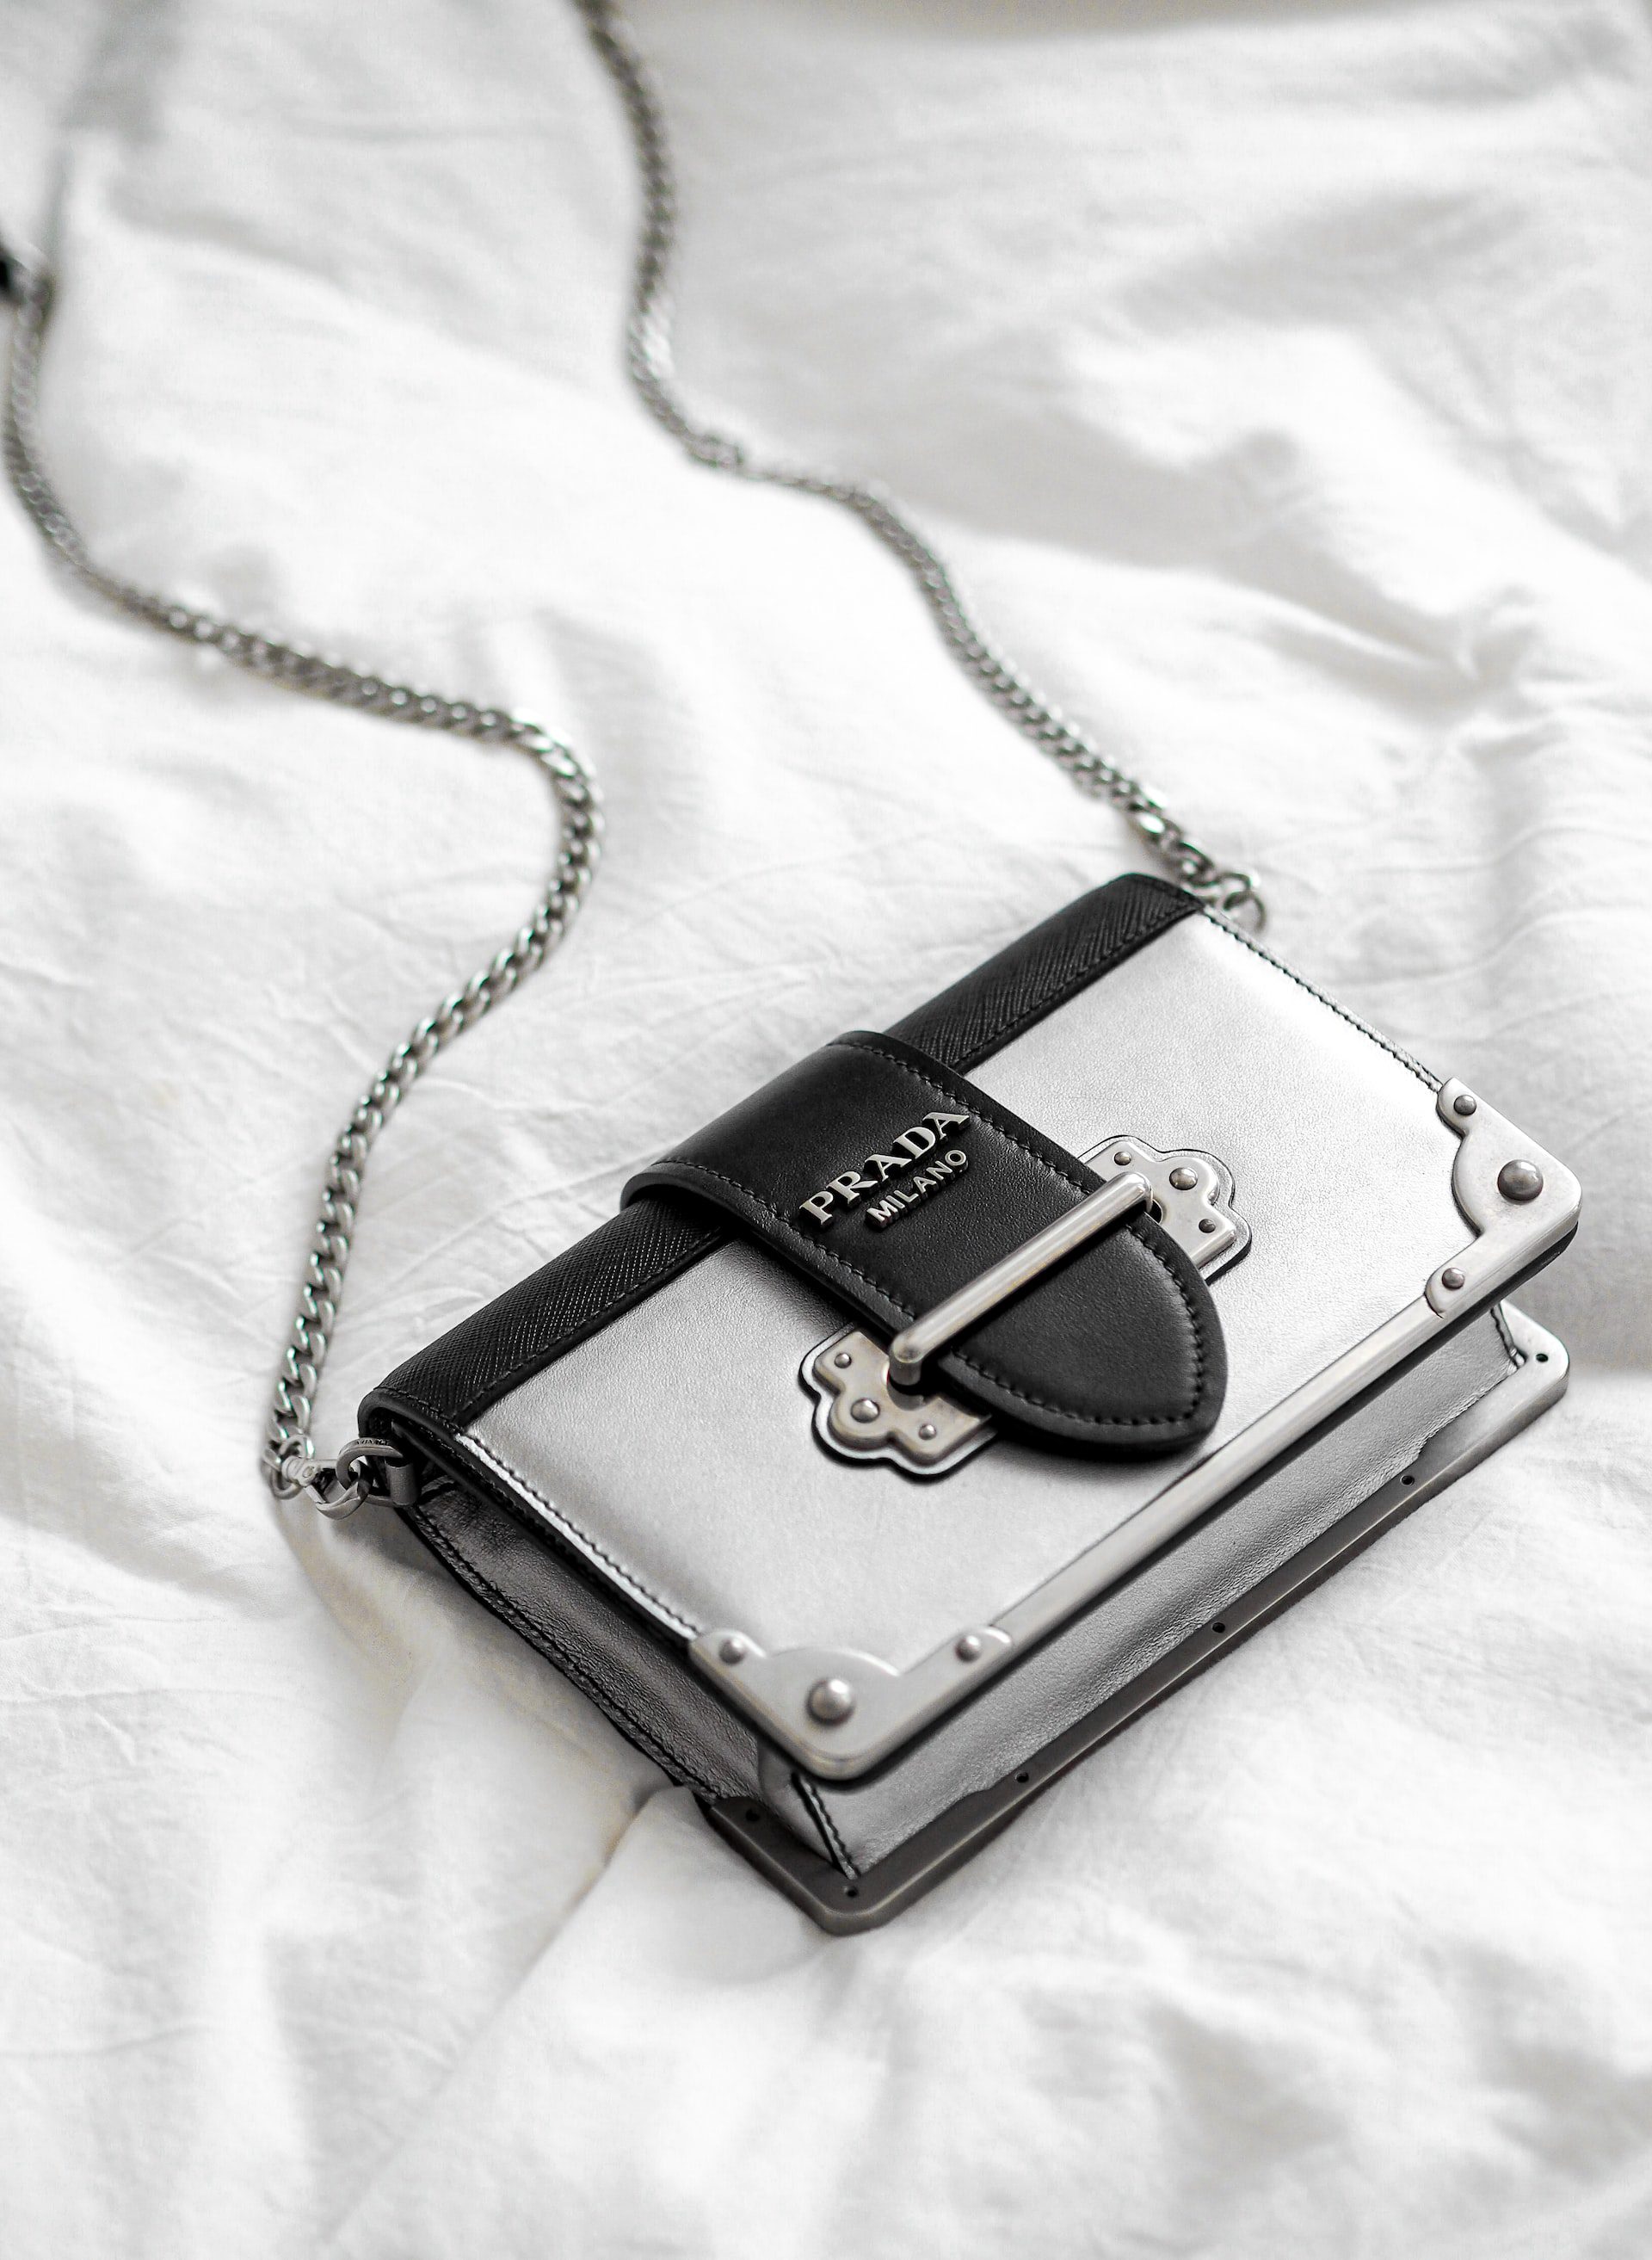 Top 10 Best Designer Luxury Handbags for Women - Discover Walks Blog